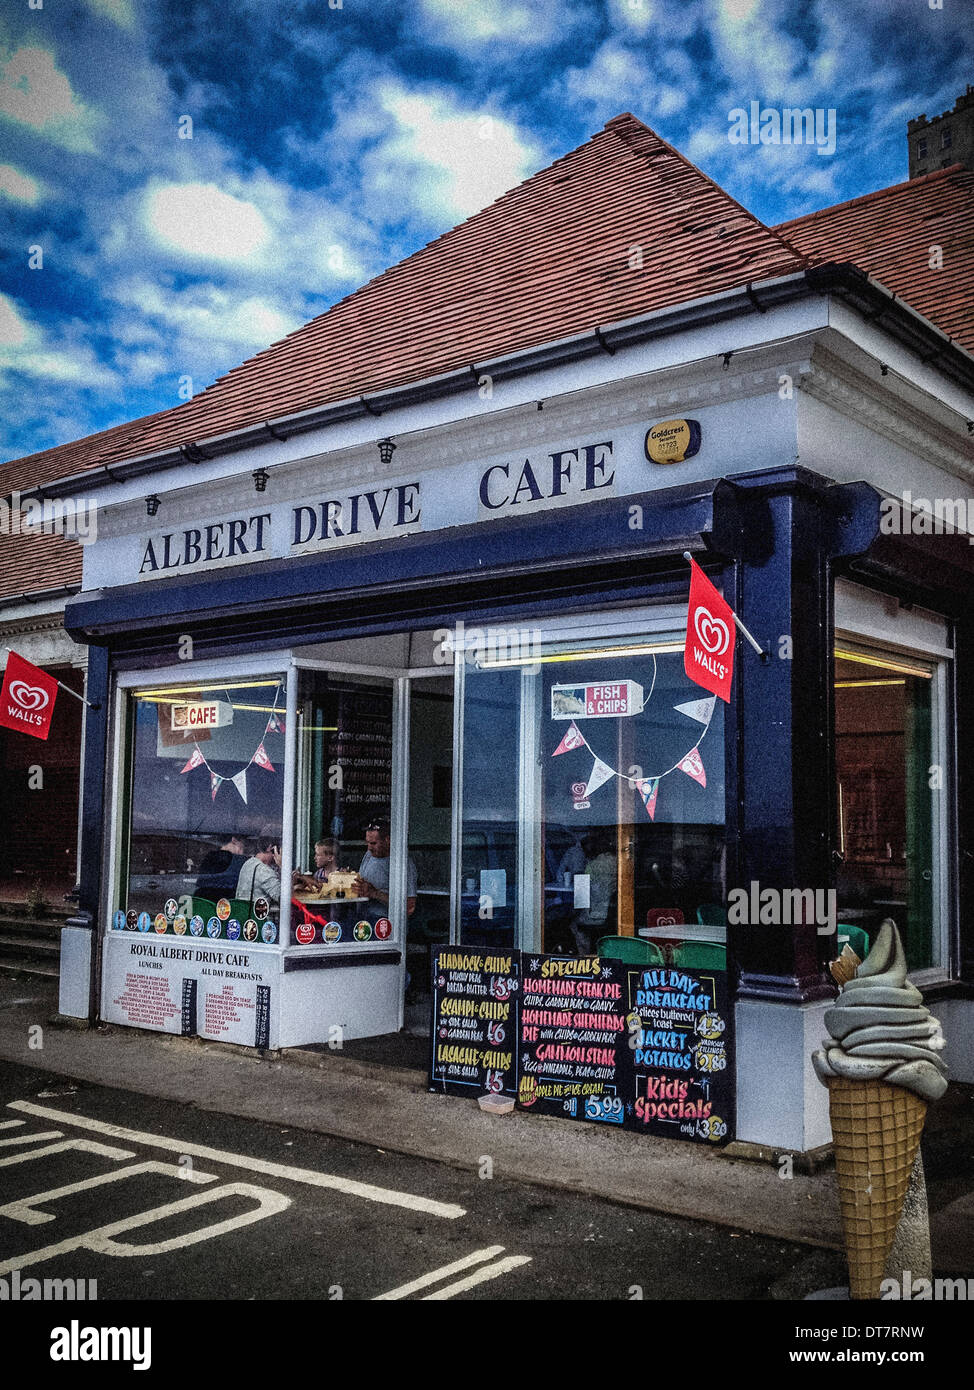 Albert Drive Cafe, Scarborough, Vereinigtes Königreich. Stockfoto